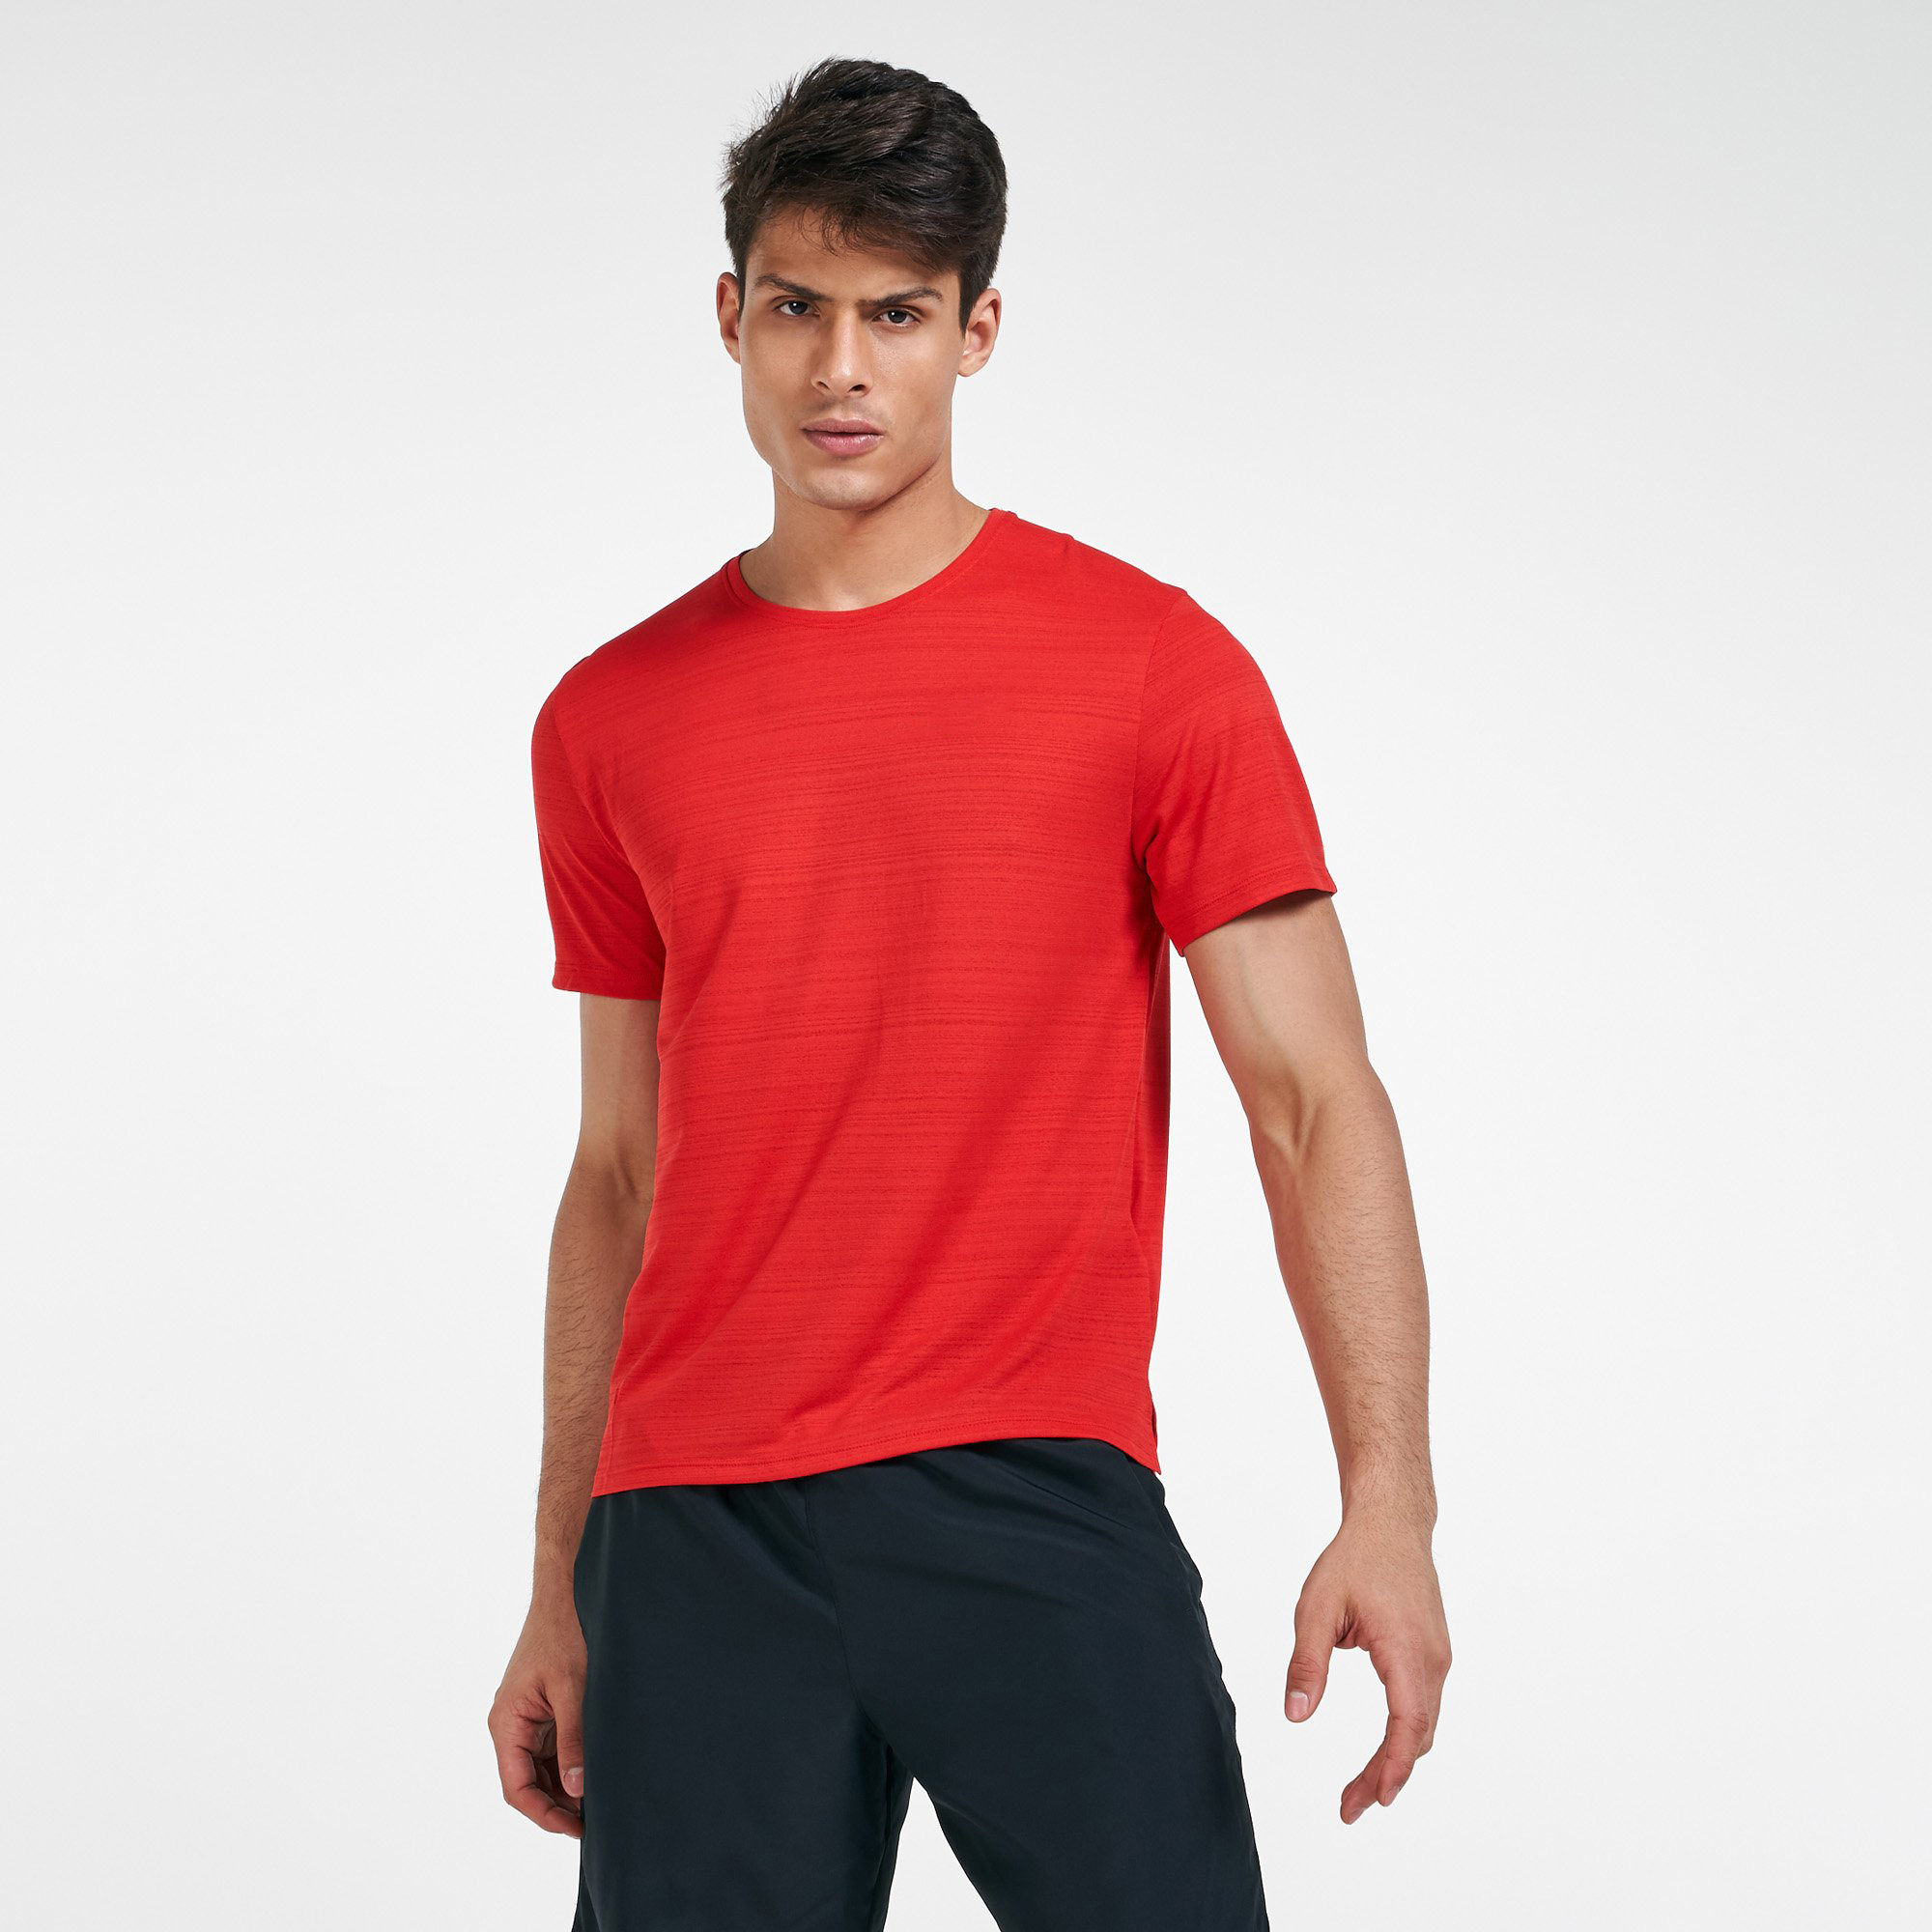 Men's Round Neck Regular Fit Sports tshirt